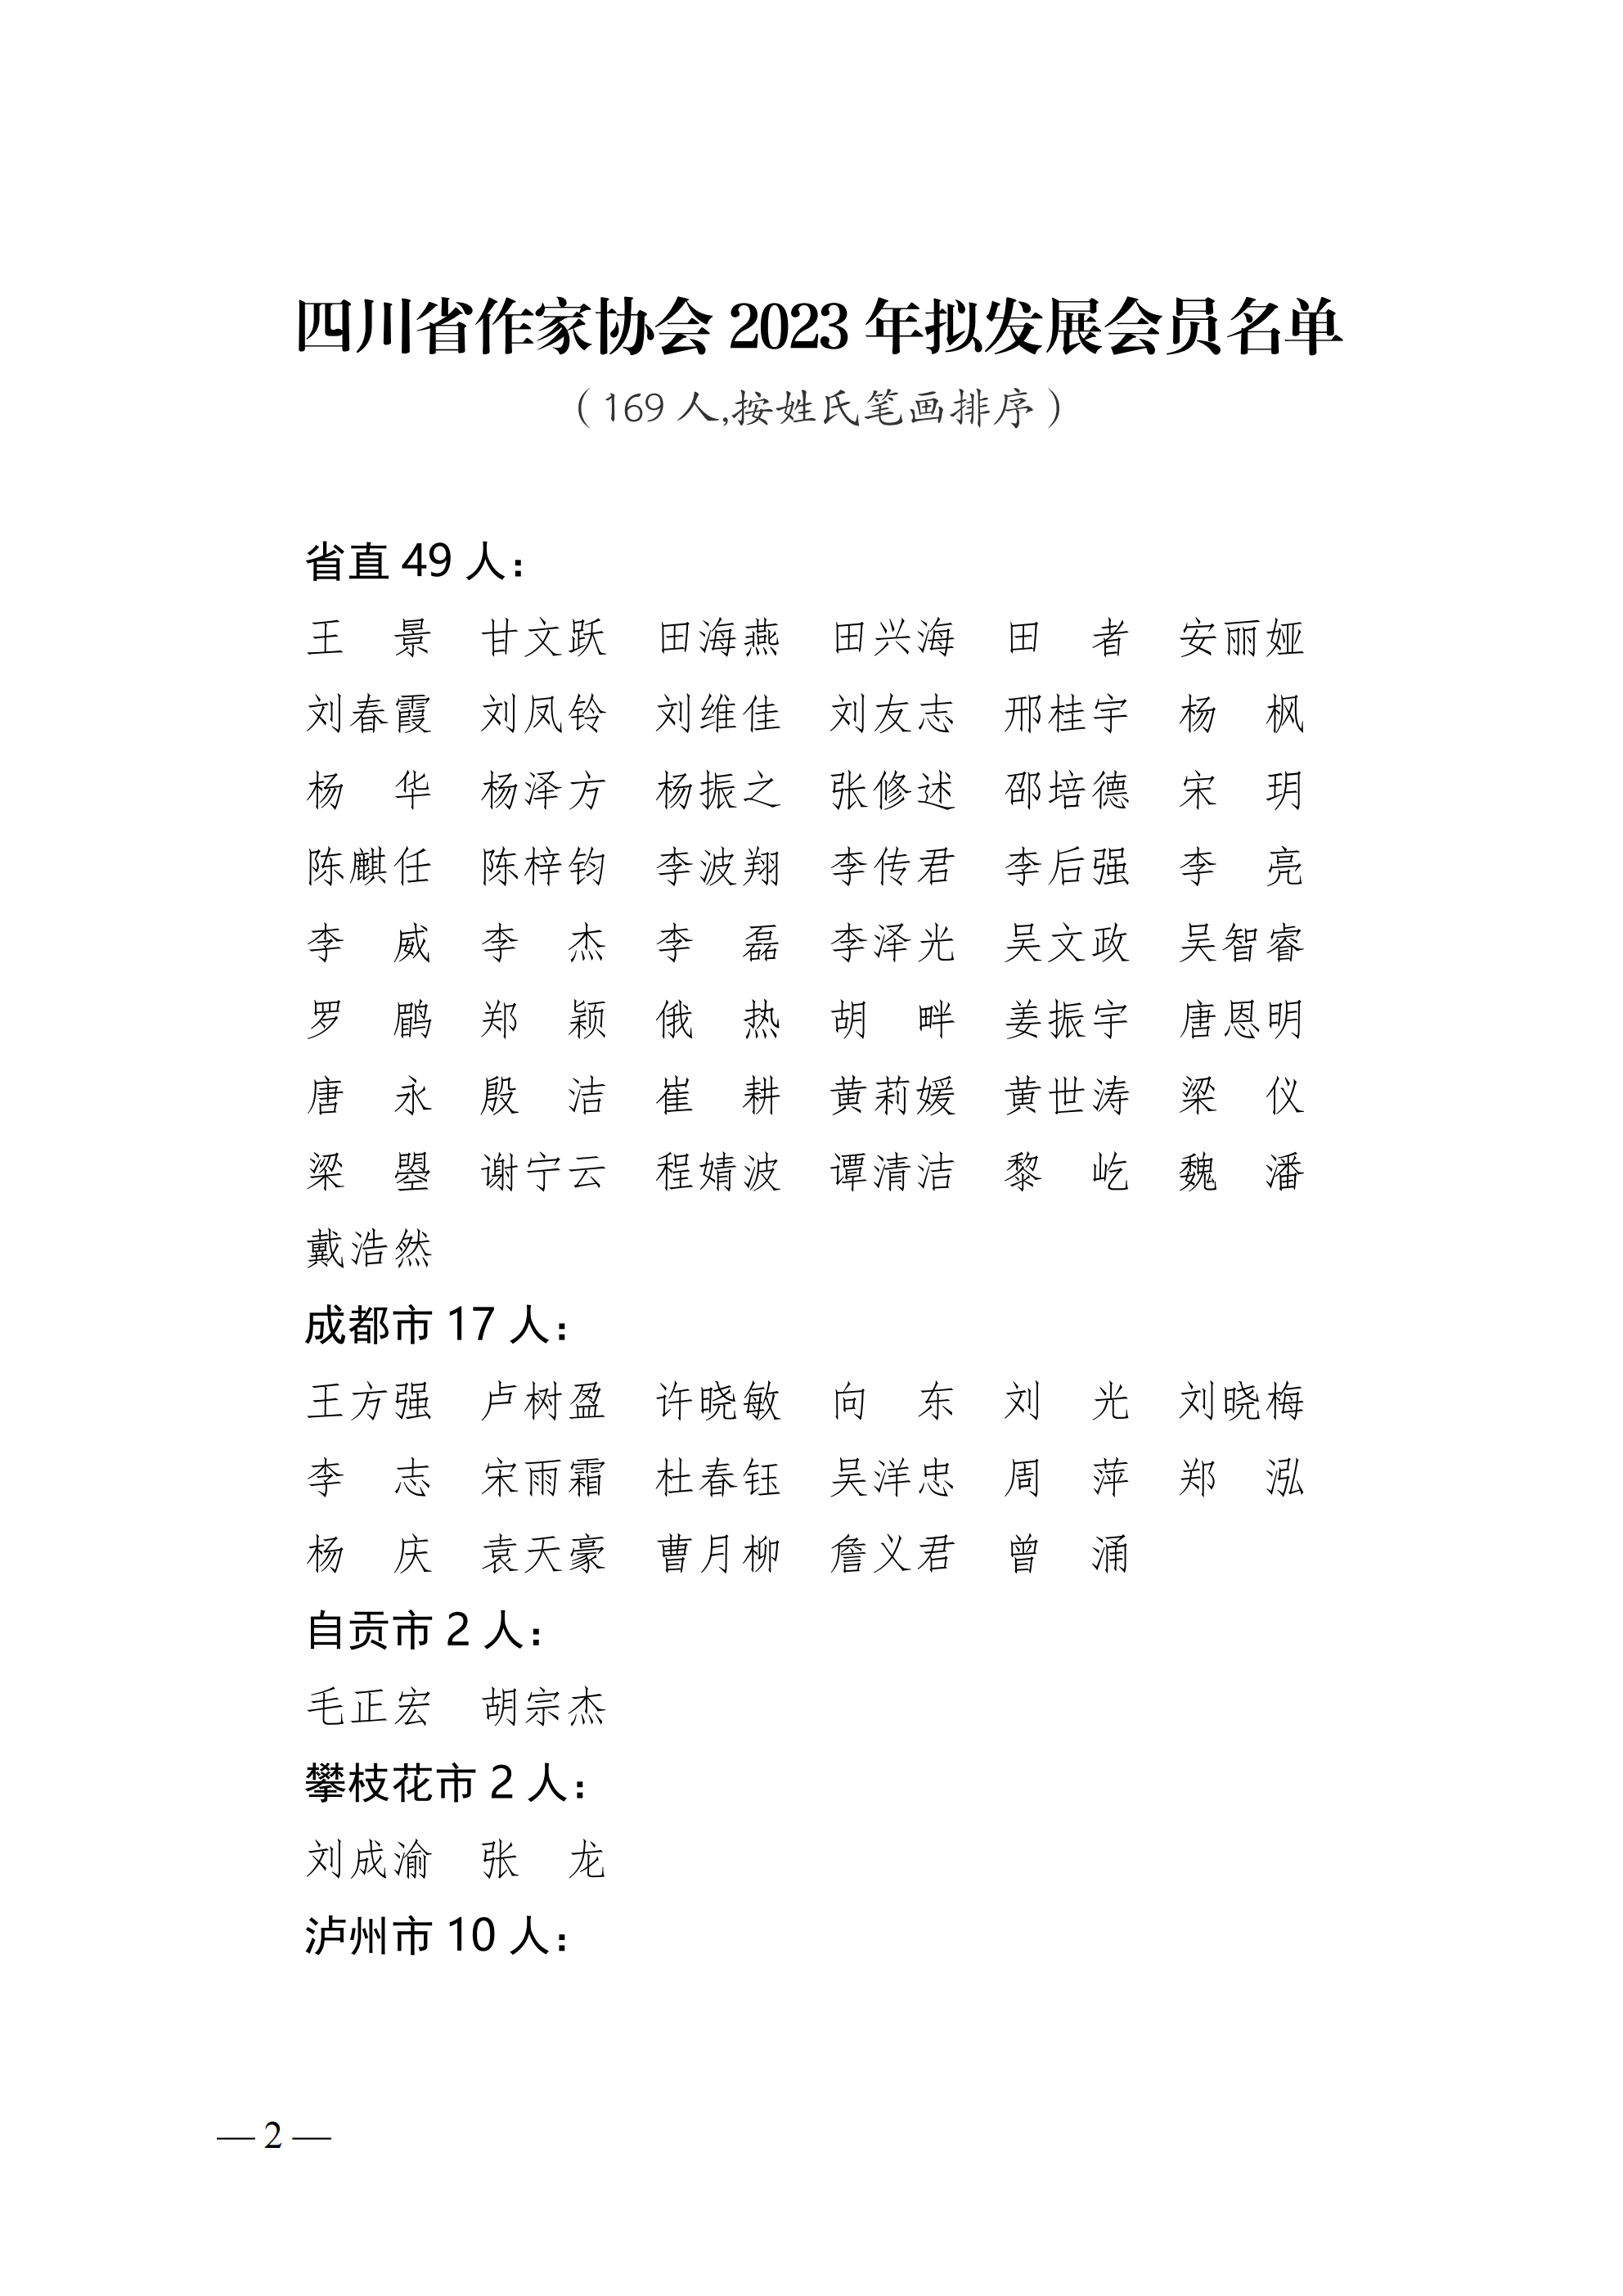 四川省作家协会2023年会员发展公示_20231023210740_01.png